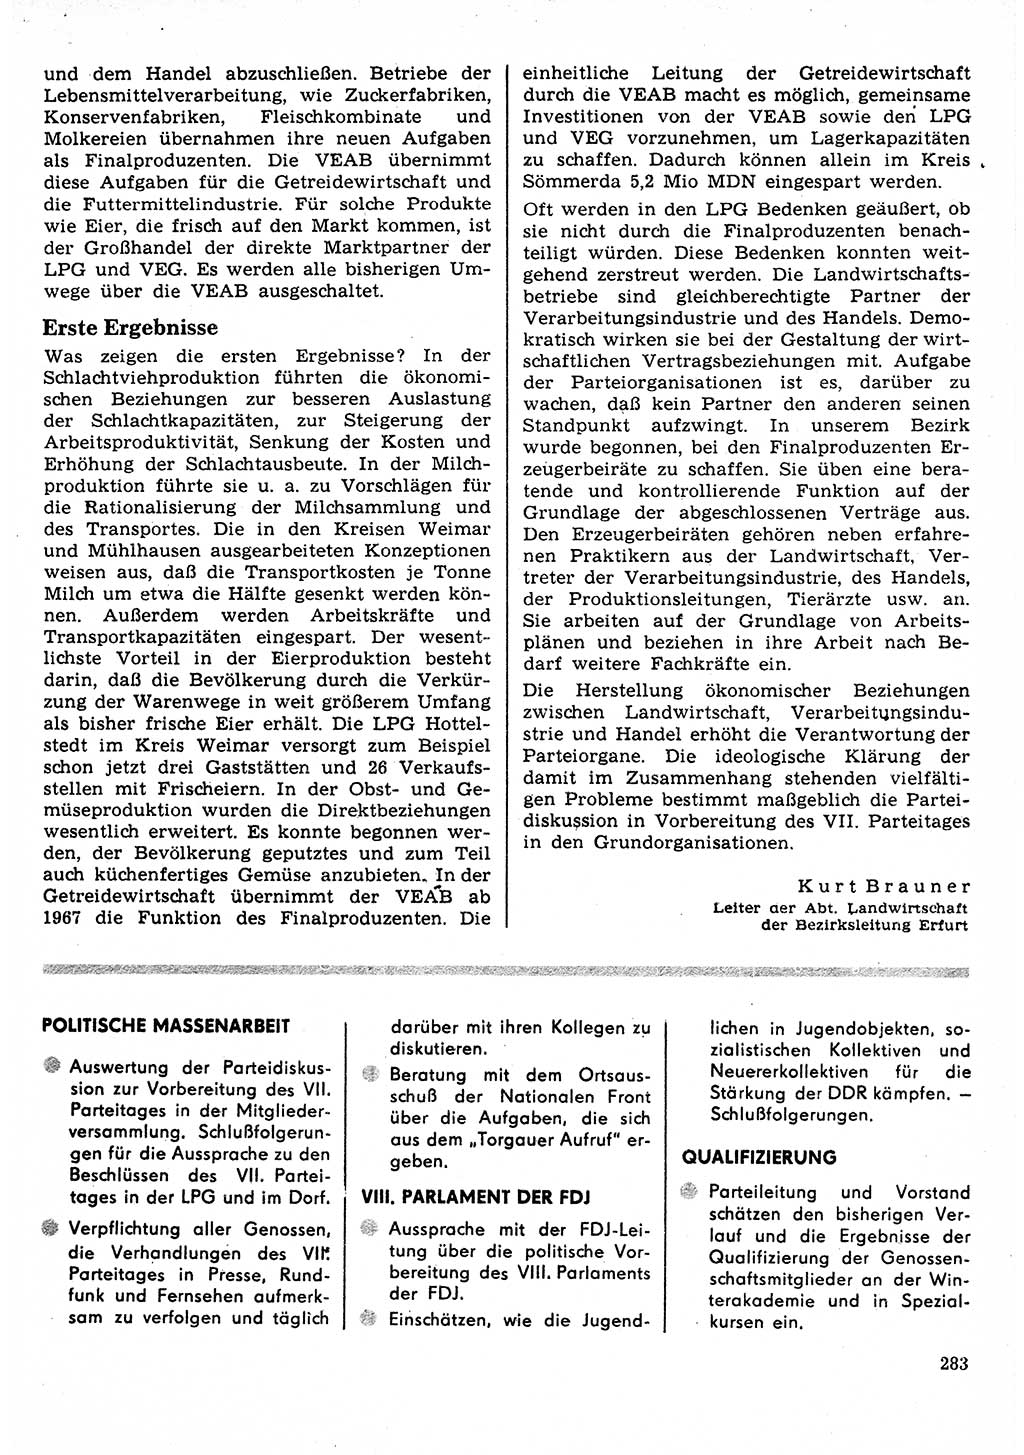 Neuer Weg (NW), Organ des Zentralkomitees (ZK) der SED (Sozialistische Einheitspartei Deutschlands) für Fragen des Parteilebens, 22. Jahrgang [Deutsche Demokratische Republik (DDR)] 1967, Seite 283 (NW ZK SED DDR 1967, S. 283)